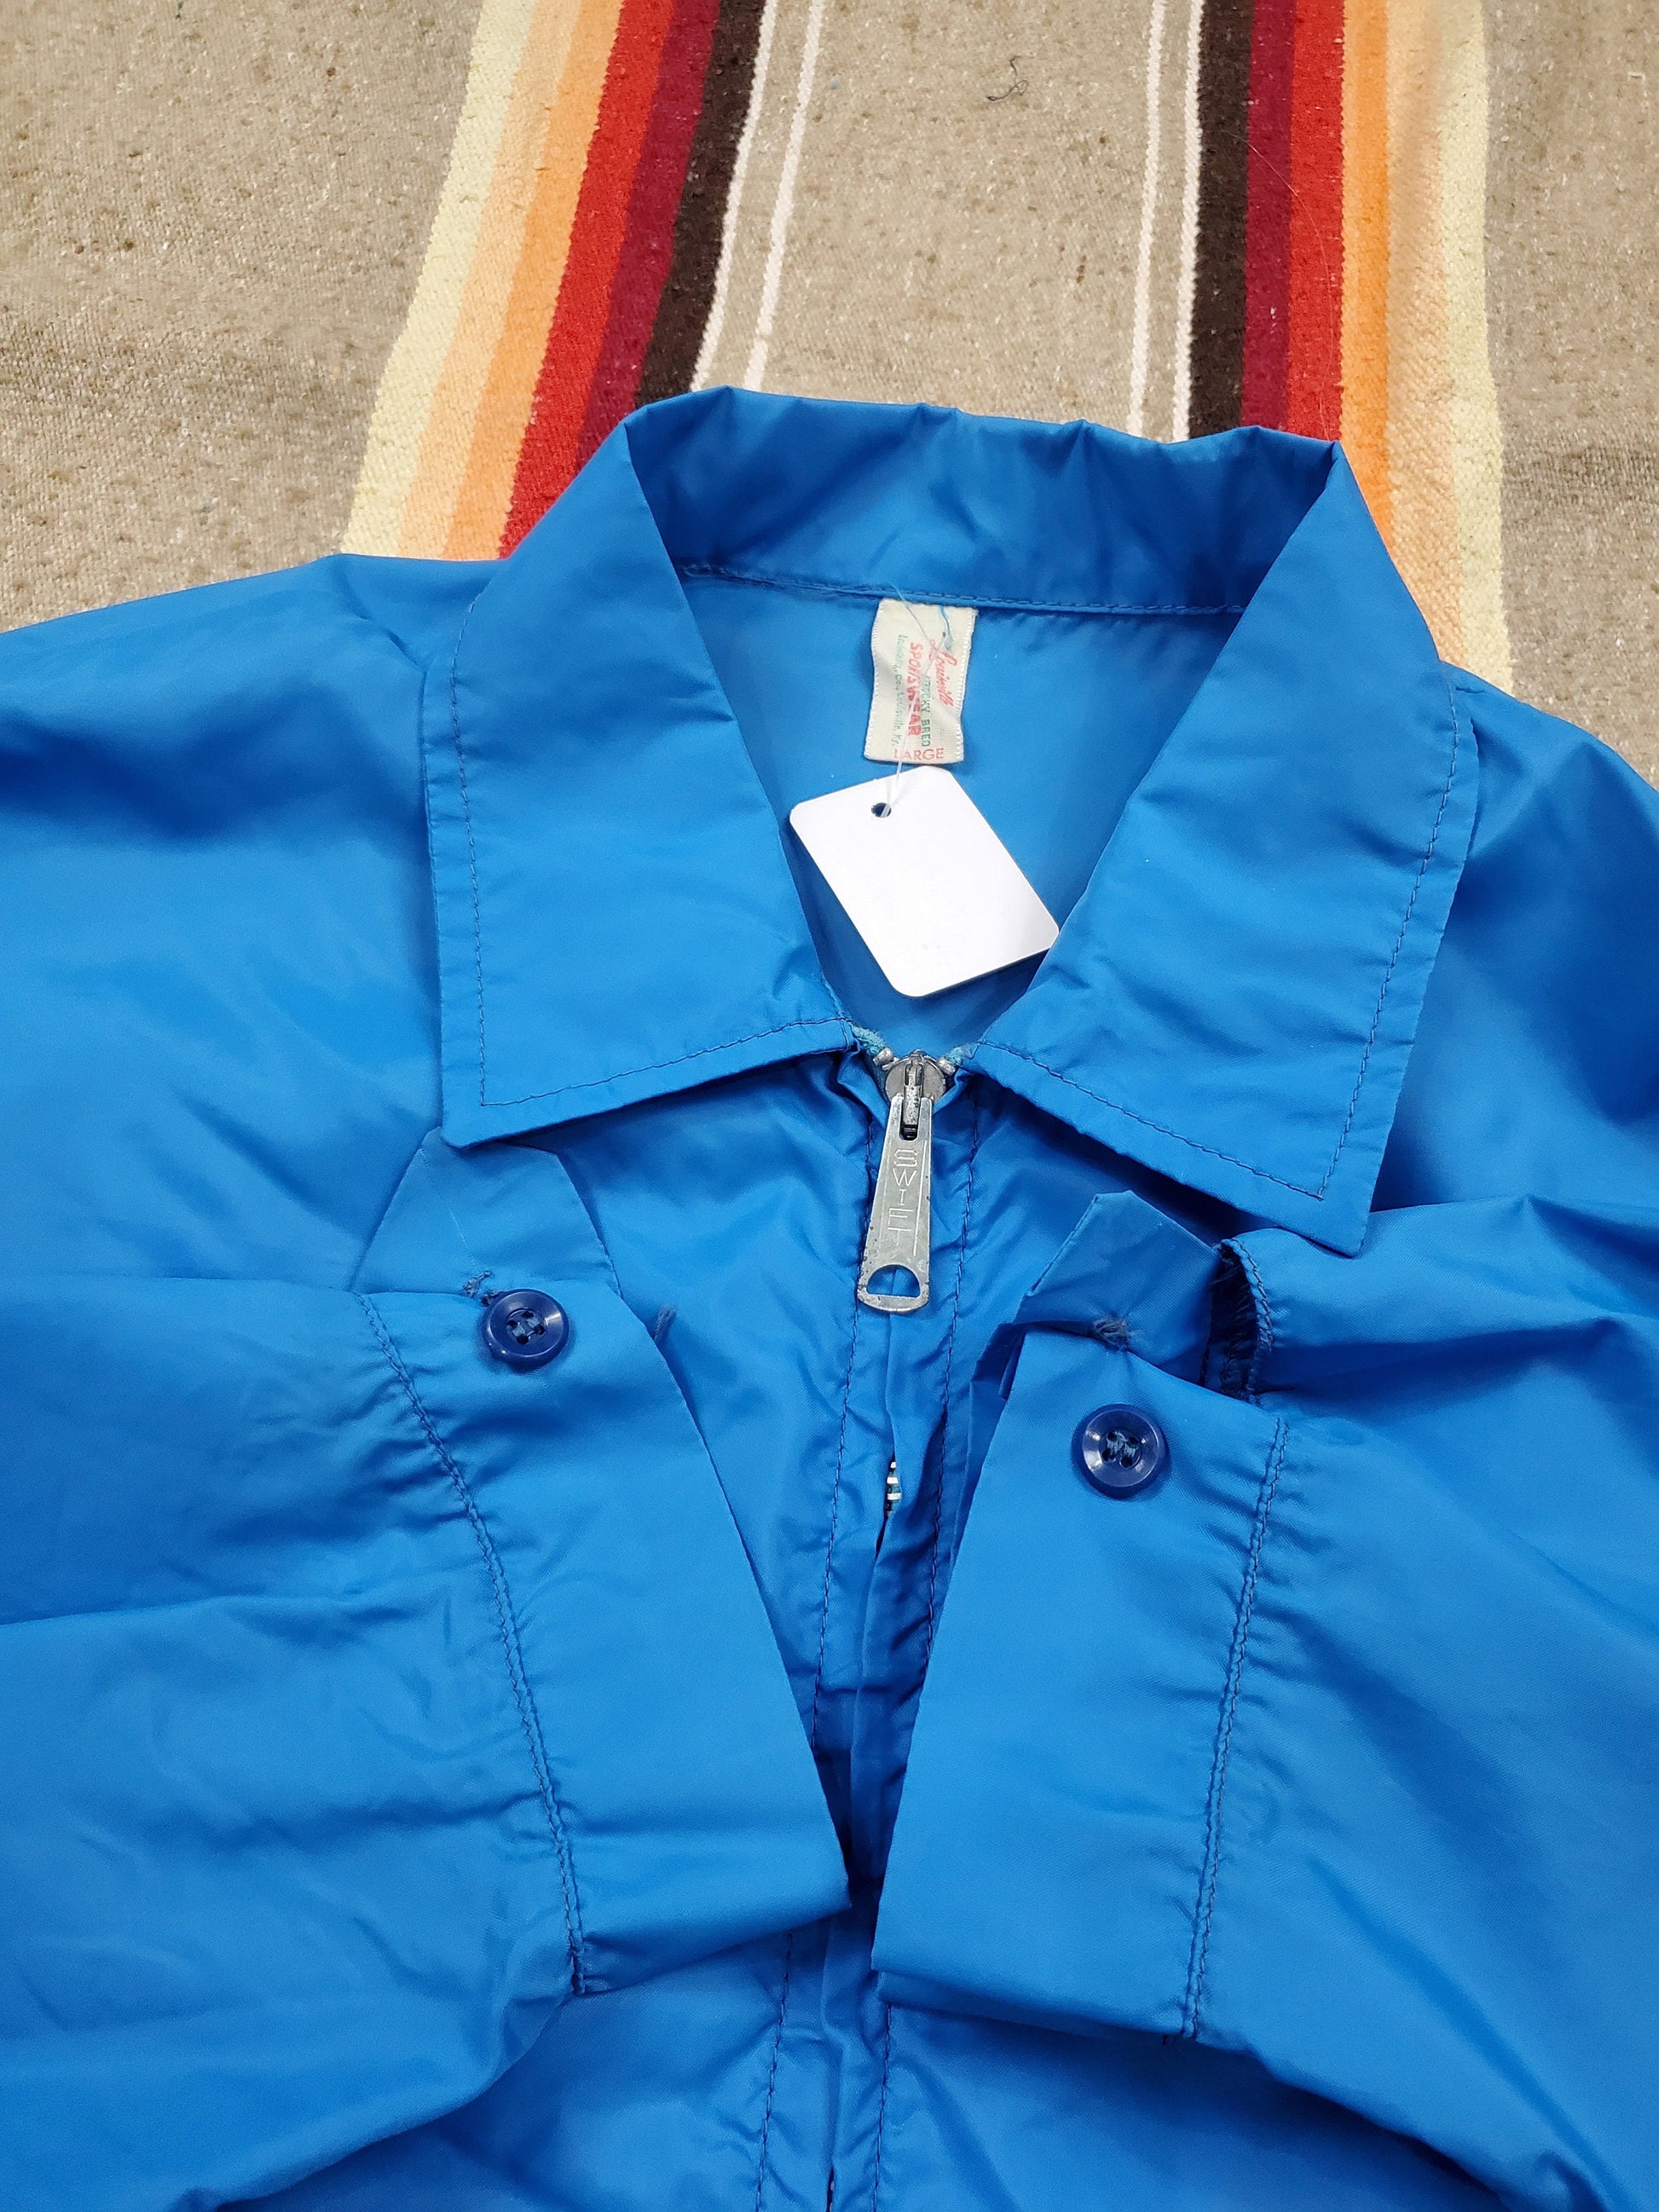 1970s/1980s Louisville Sportswear Zip Up Nylon Windbreaker Jacket Made in USA Size L